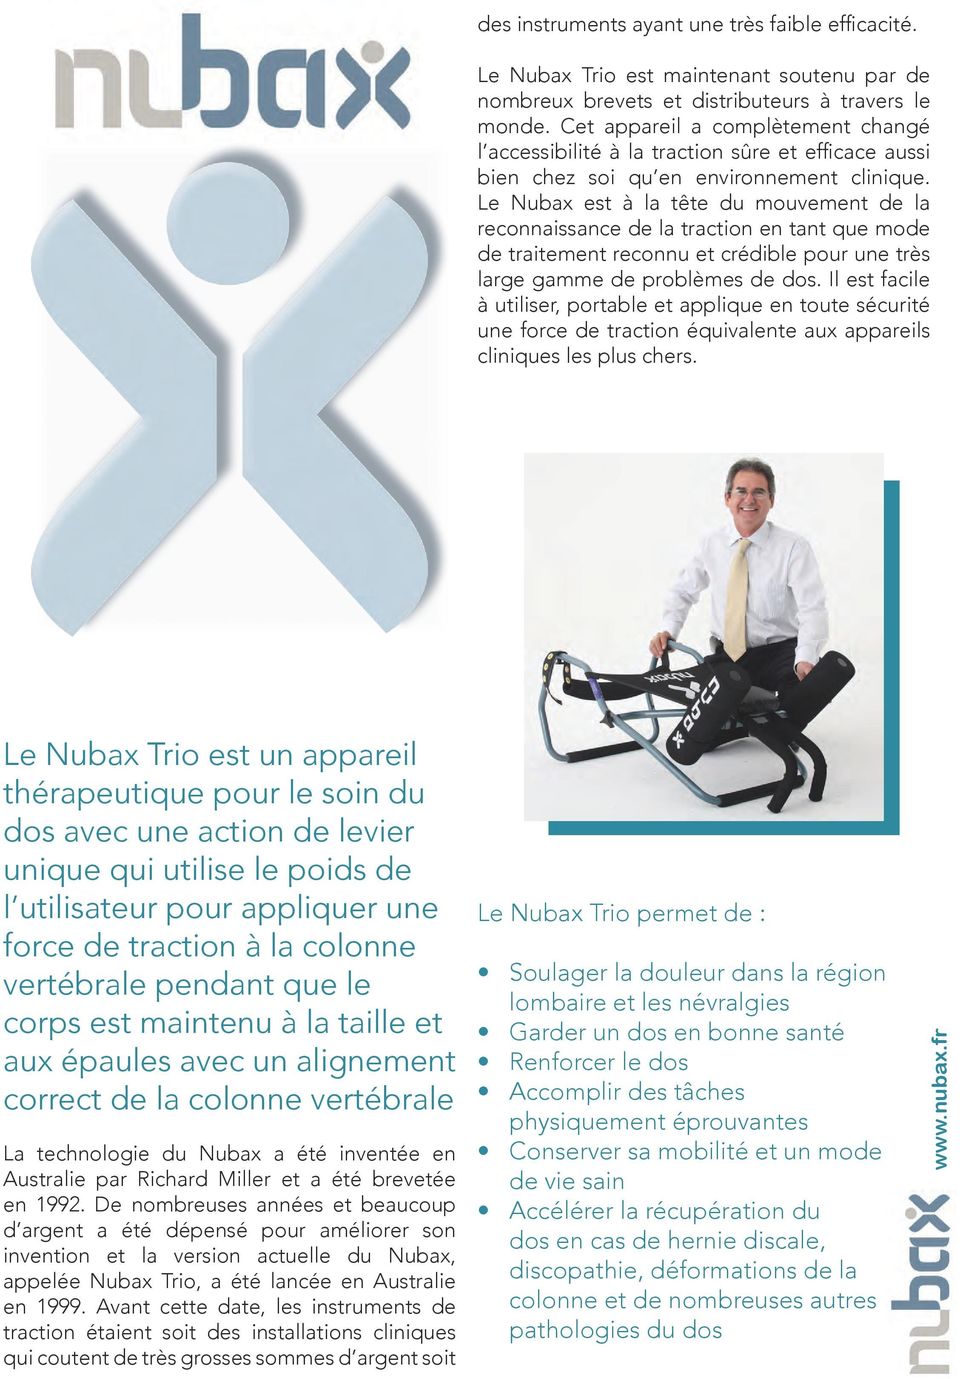 Le Nubax est à la tête du mouvement de la reconnaissance de la traction en tant que mode de traitement reconnu et crédible pour une très large gamme de problèmes de dos.